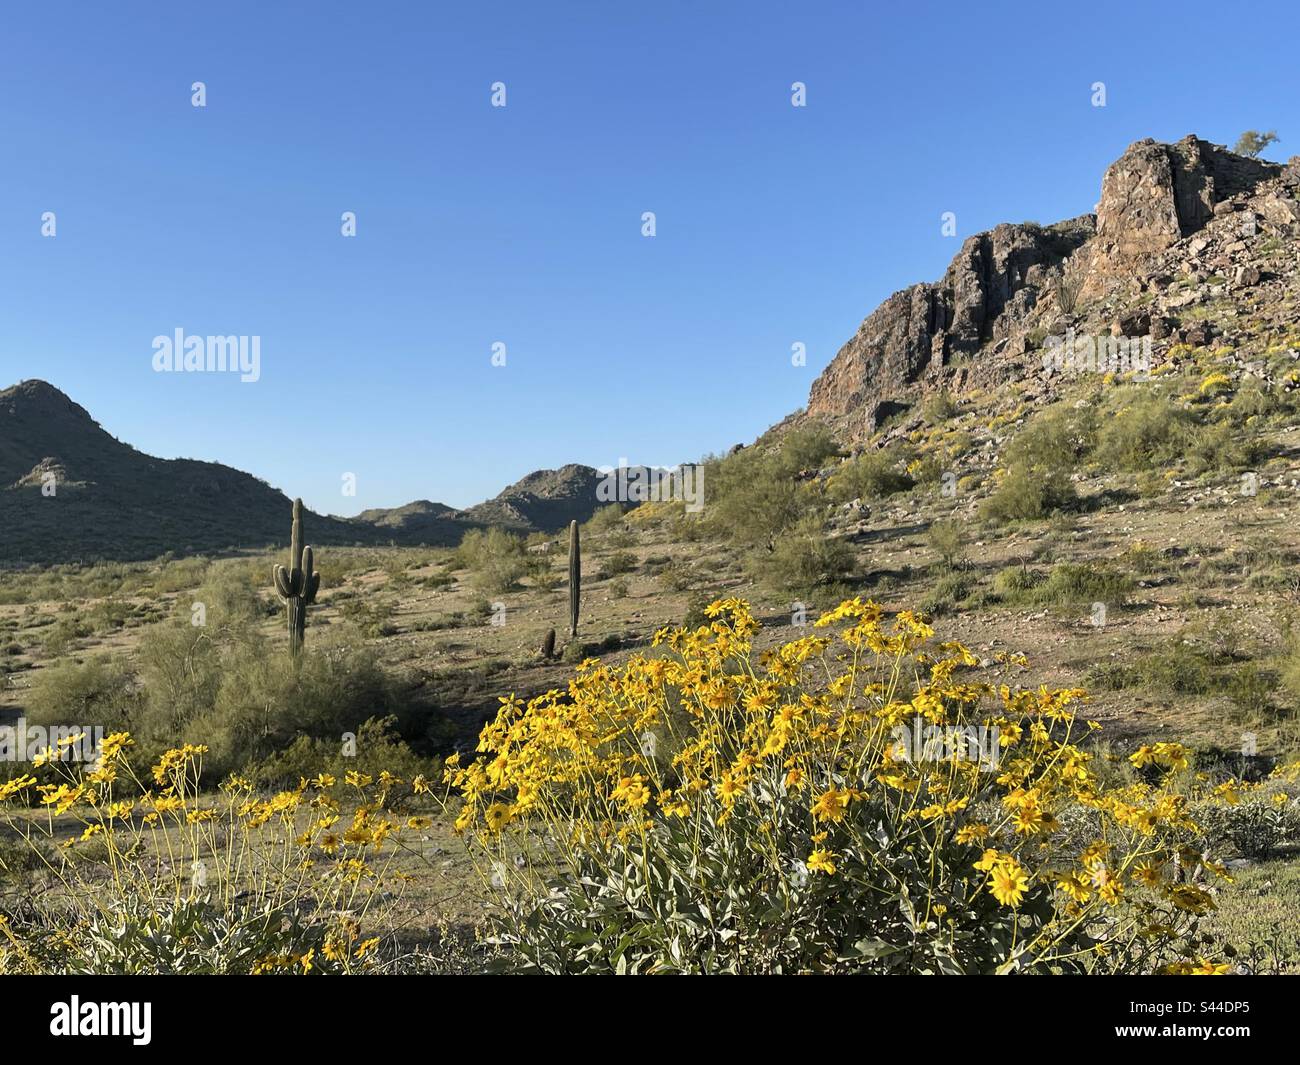 Réserve de montagnes de Phoenix au printemps, buissons fragiles bordent des pentes rocheuses, jaune brillant parmi les rochers déchiquetés, fleurs sauvages, désert de Sonoran, ciel bleu vif, saguaro, Arizona Banque D'Images